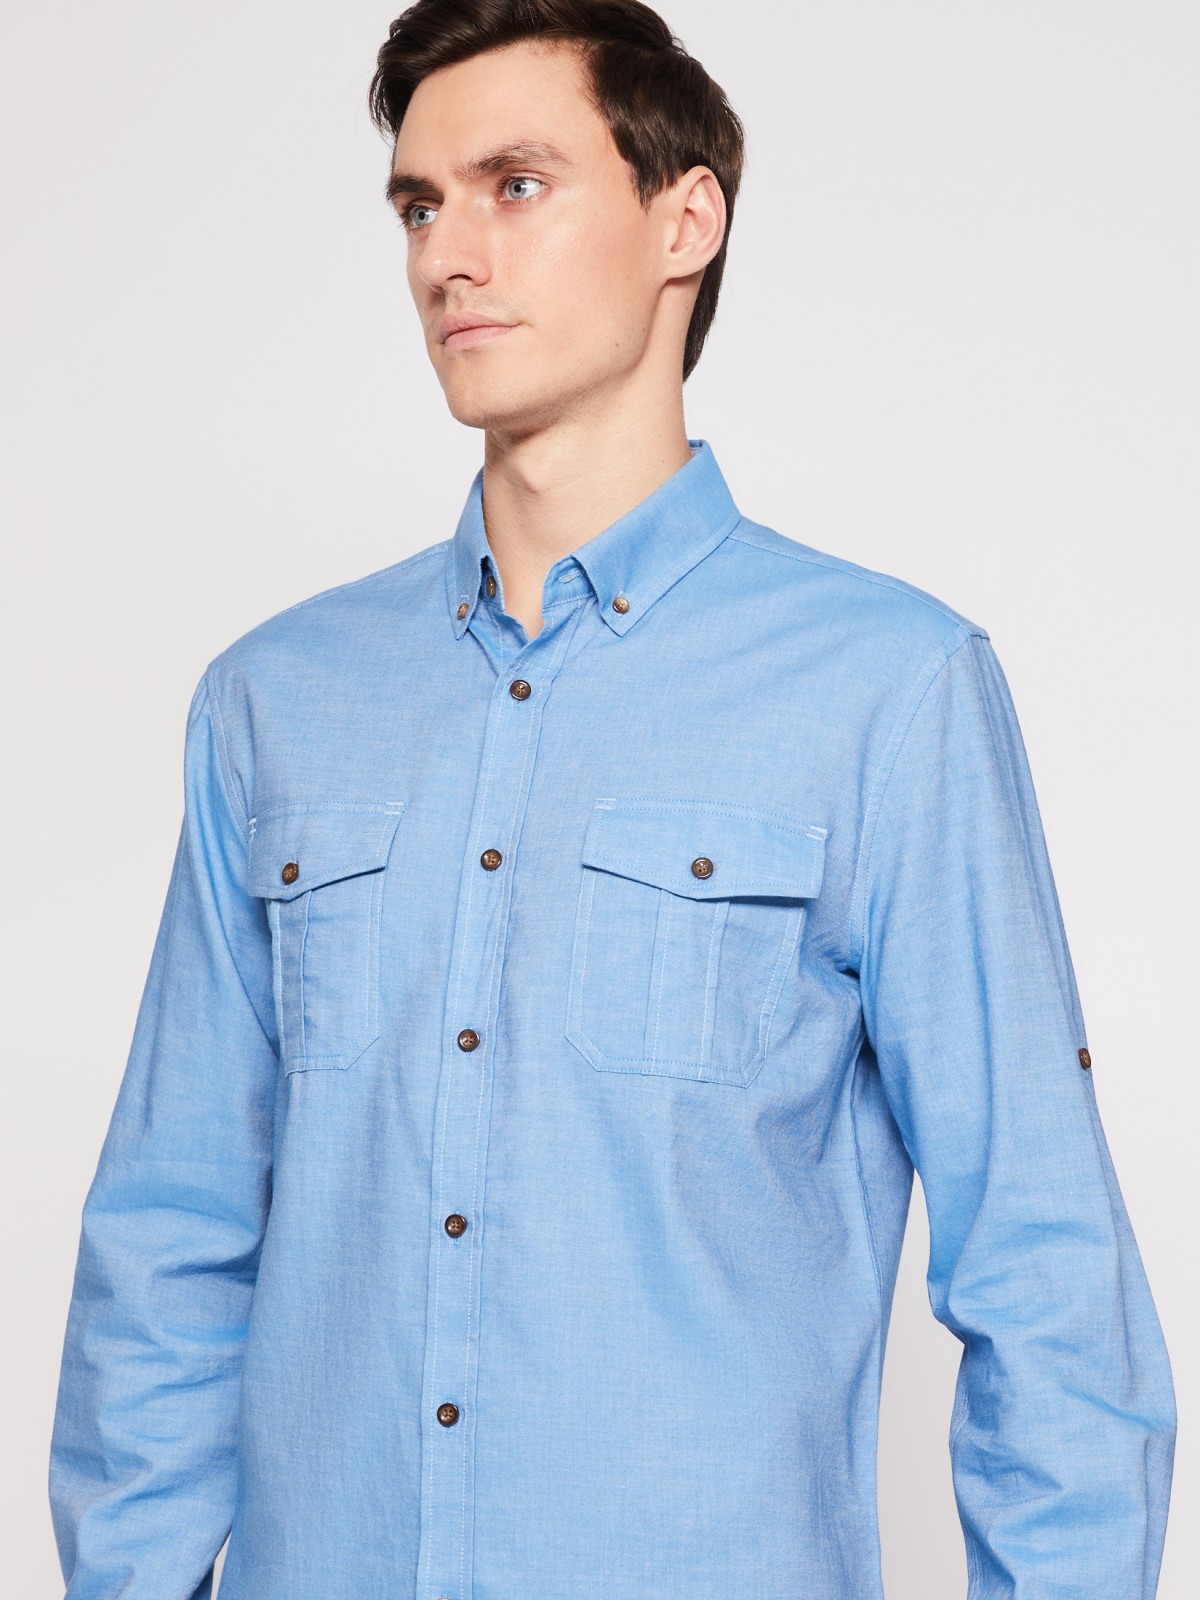 Хлопковая рубашка с длинным рукавом zolla 012122159063, цвет голубой, размер M - фото 3